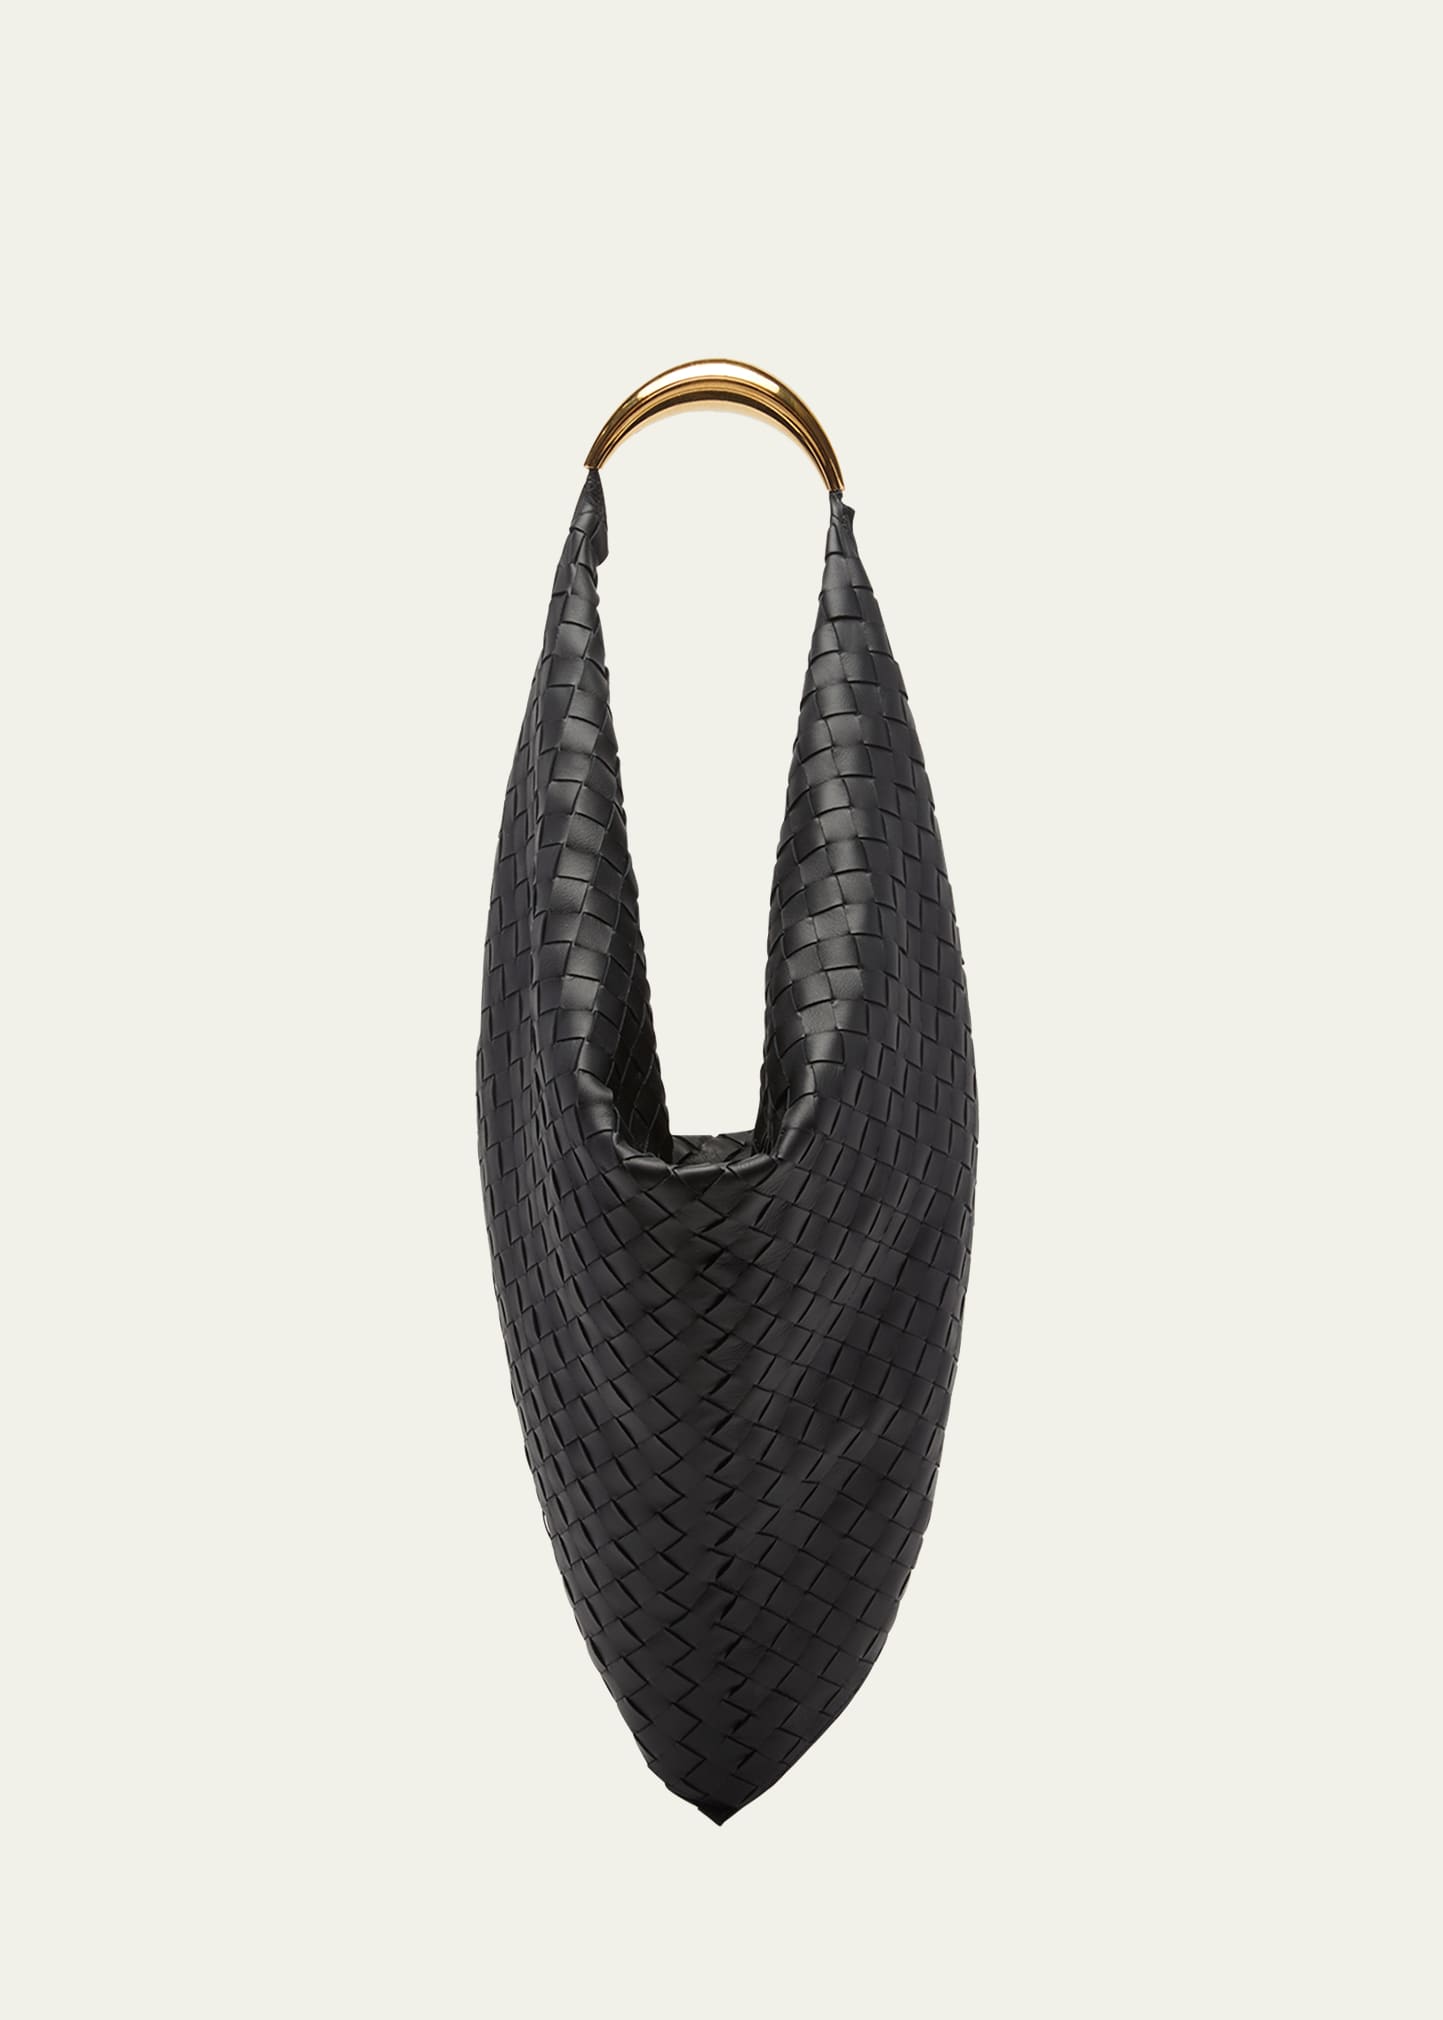 Bottega Veneta The Foulard Intrecciato Leather Shoulder Bag In Black Brass